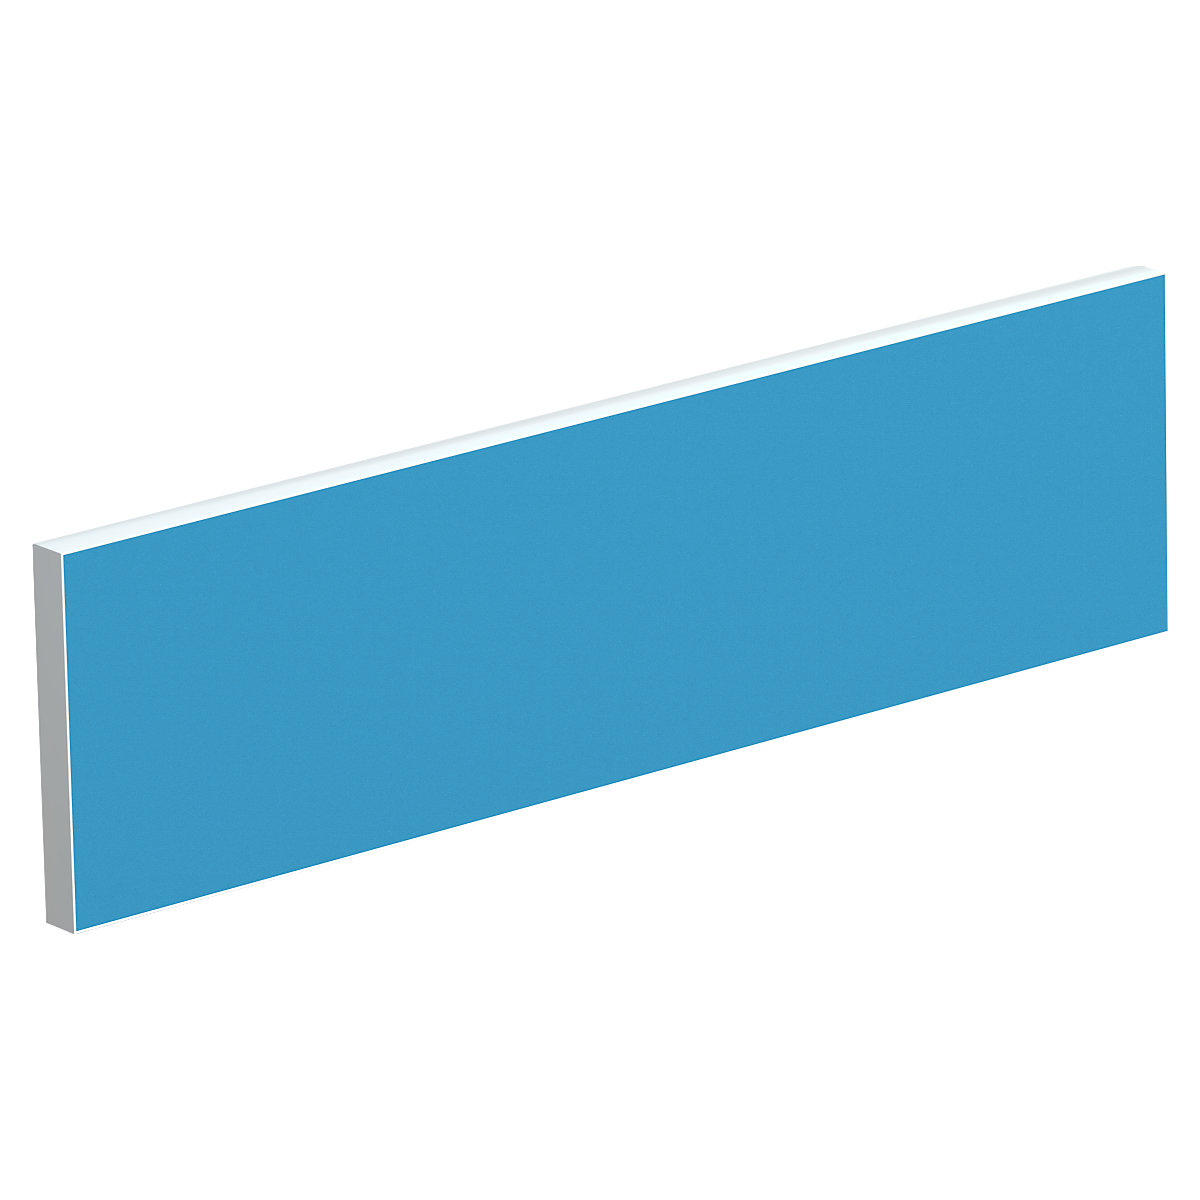 Tischtrennwand für Teamschreibtische, Breite 1600 mm, Bezug blau